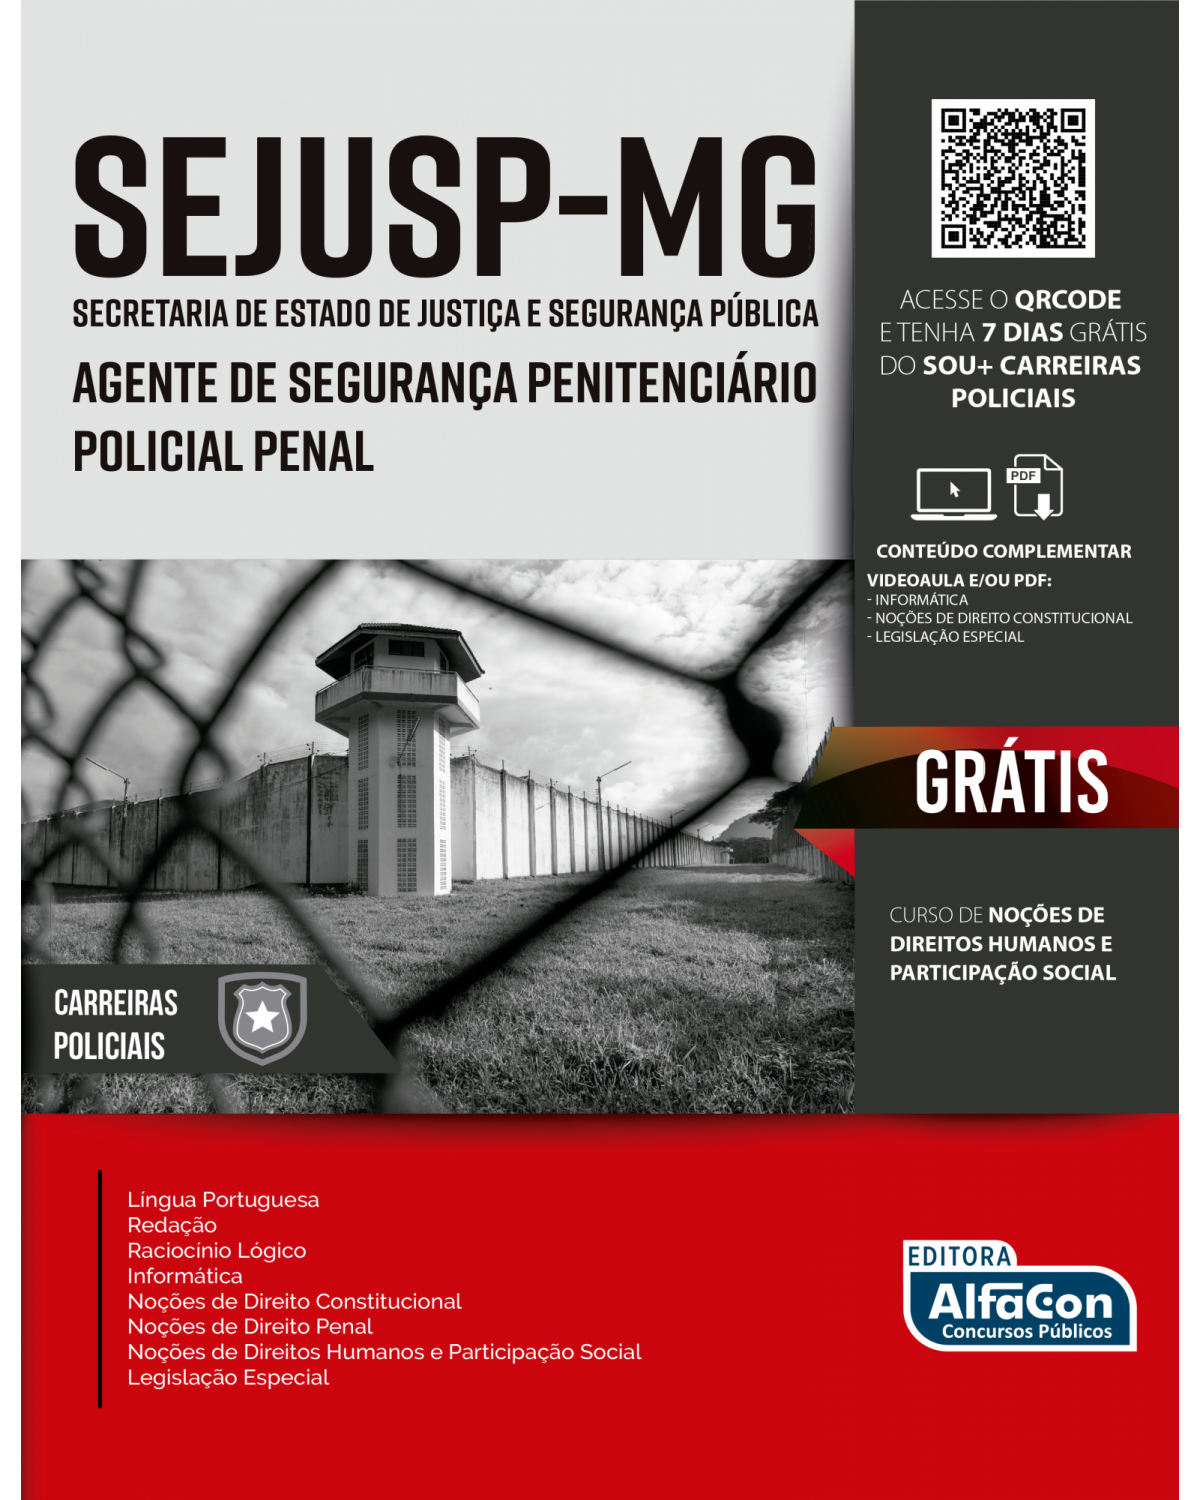 Agente de Segurança Penitenciário/Policial Penal - Secretaria de Estado de Justiça e Segurança Pública - SEJUSP MINAS GERAIS - 1ª Edição | 2021